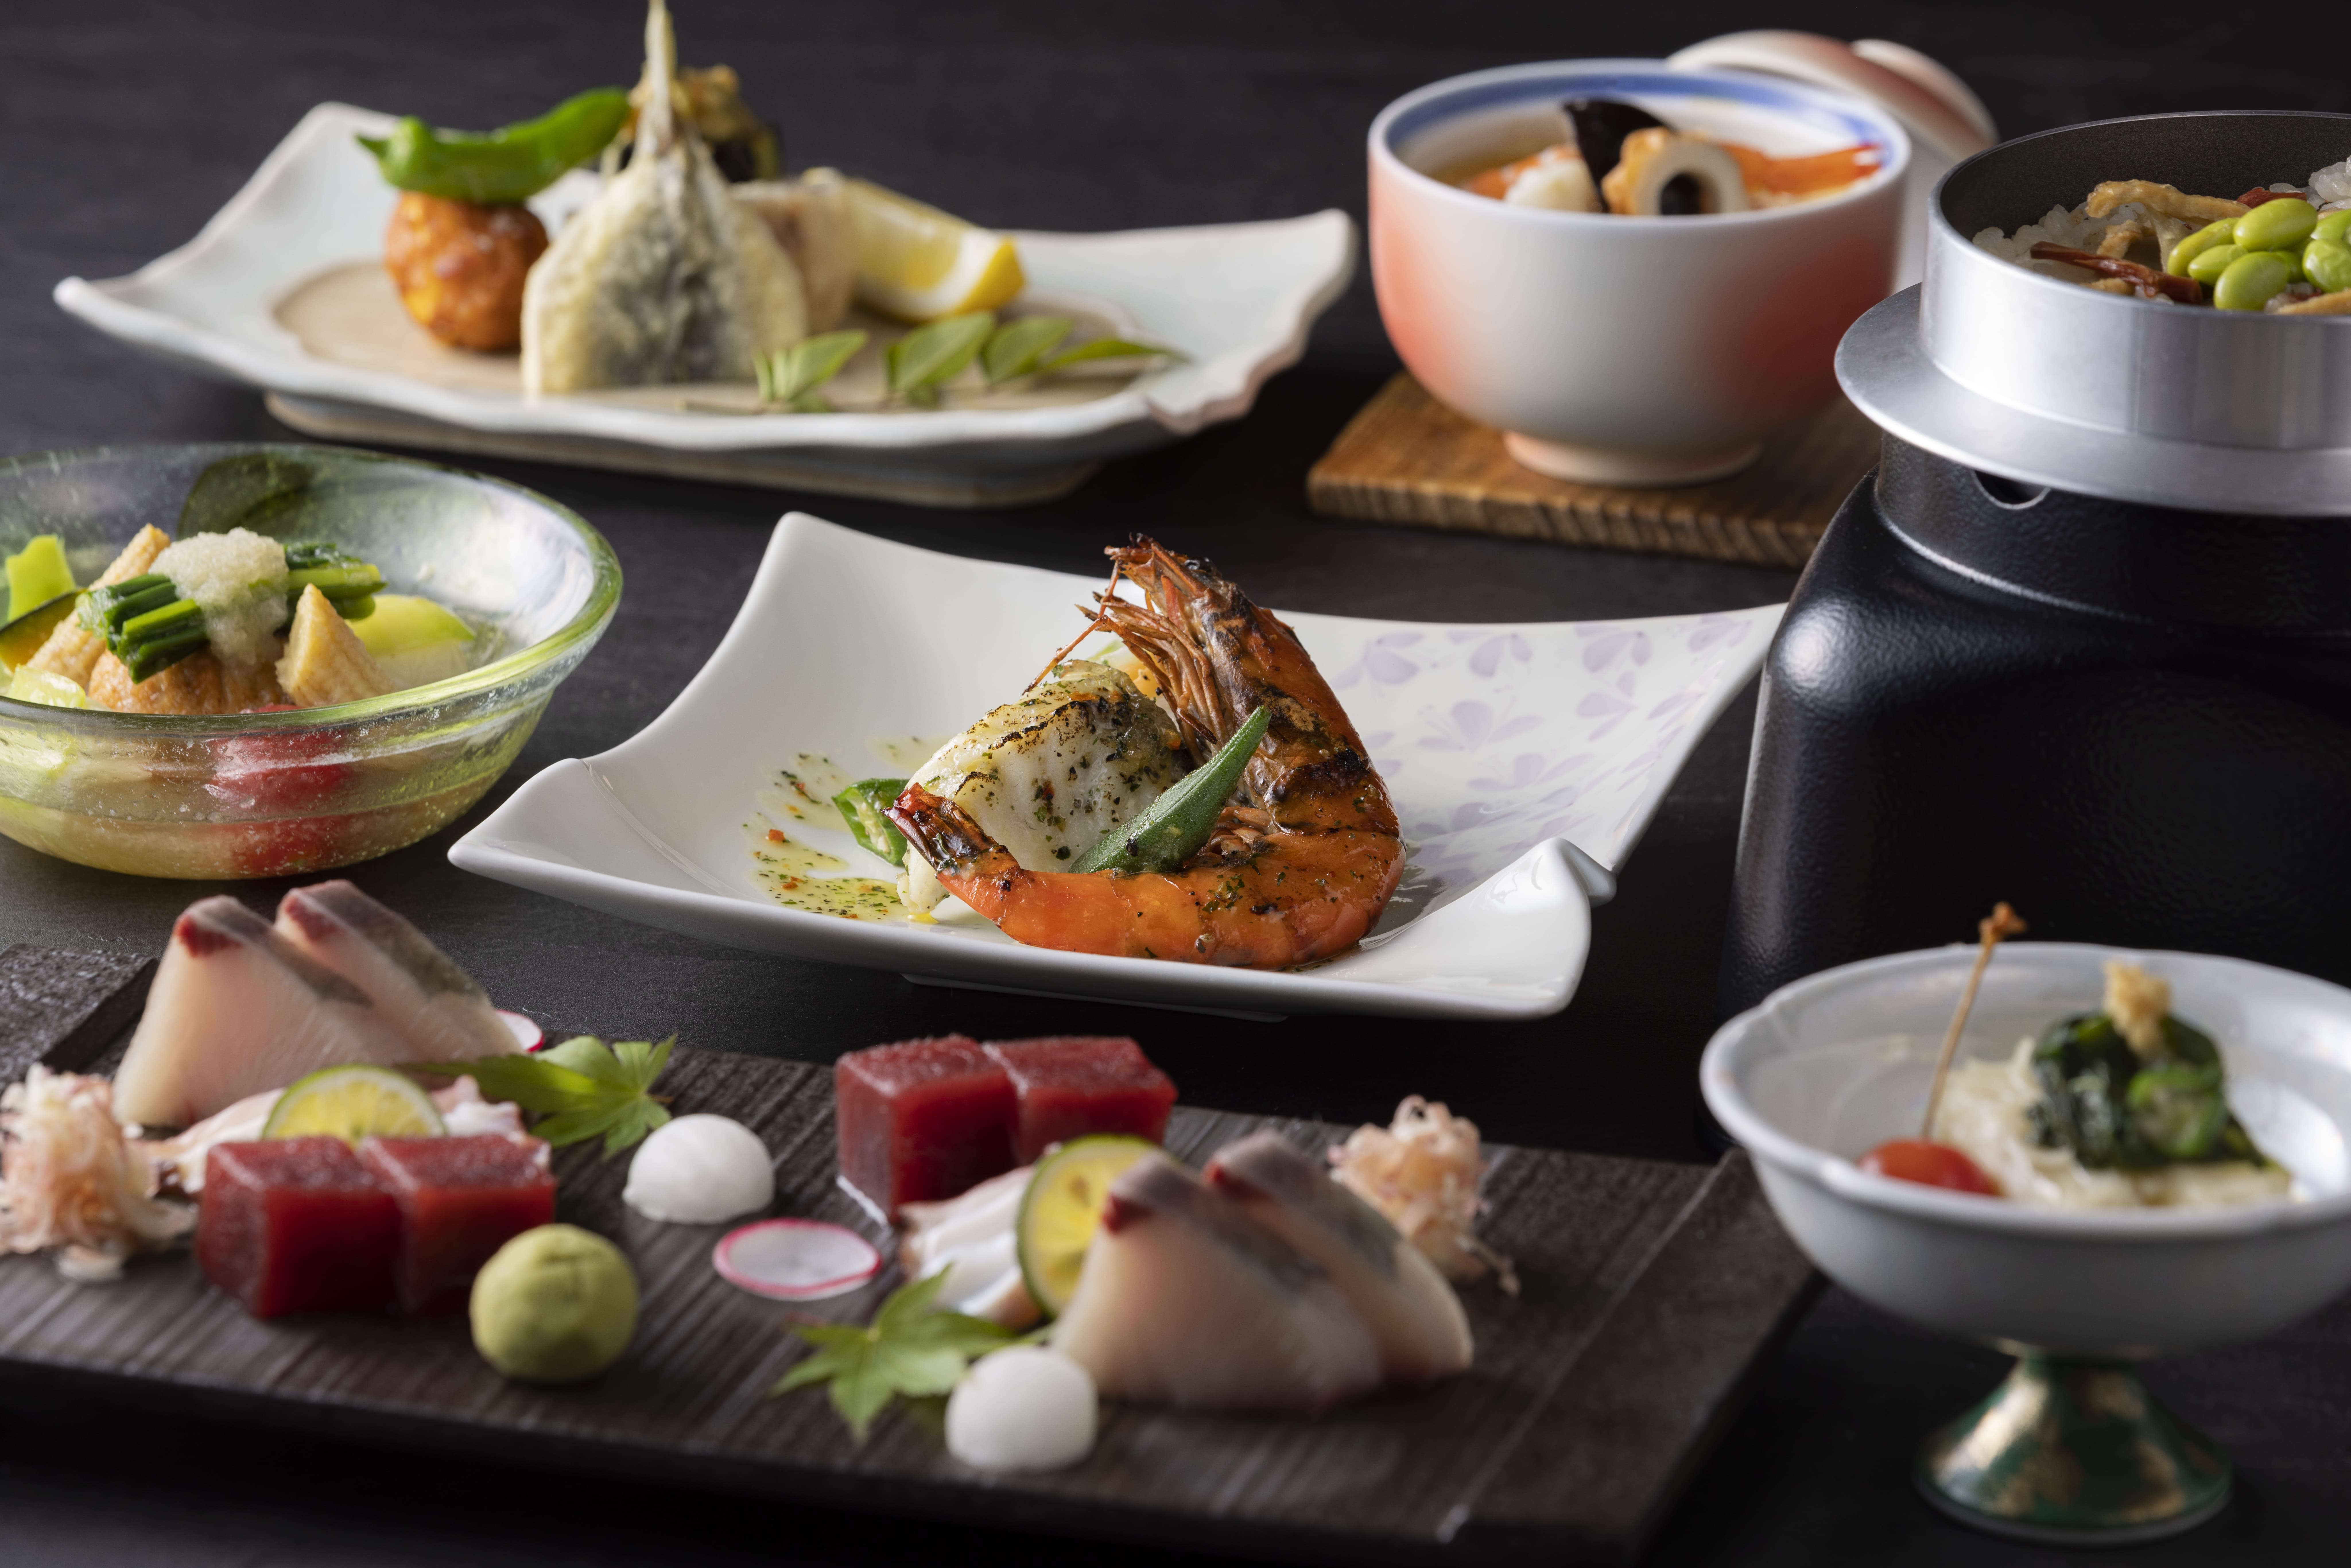 【當季懷石料理】品嚐來自瀨戶內的色彩繽紛的懷石料理食材